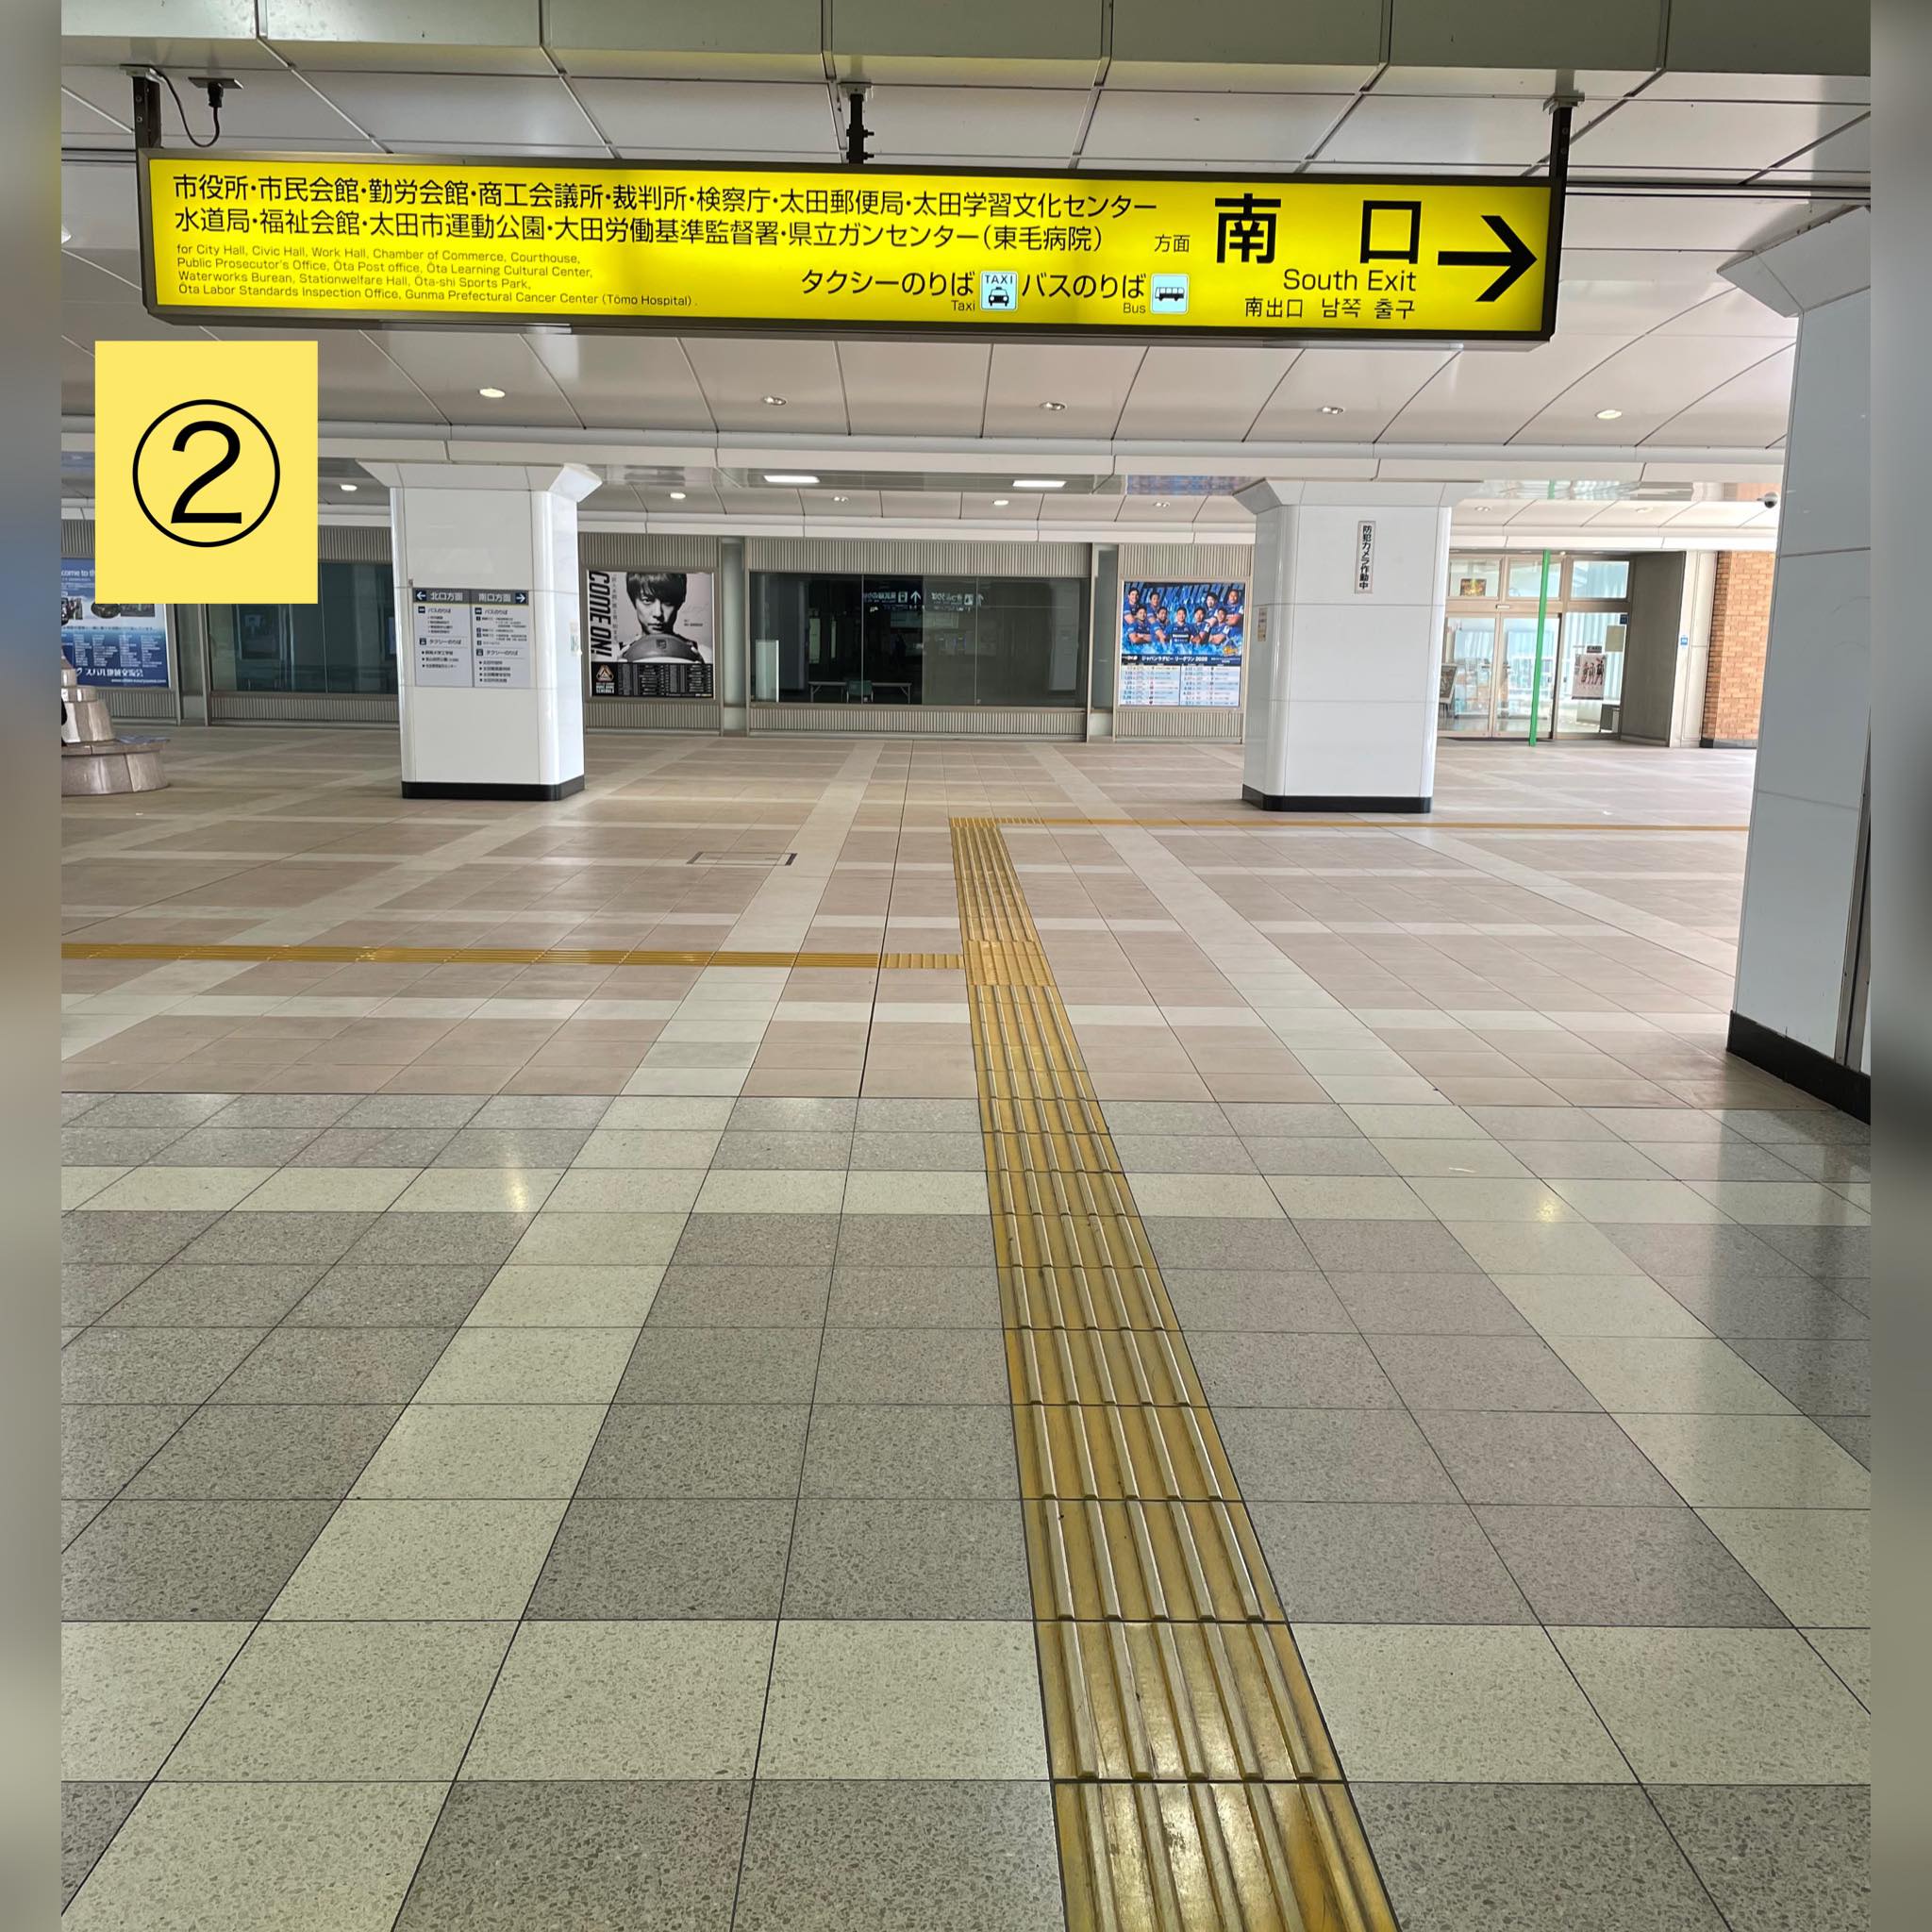 NAORU整体 太田院のアクセス経路説明文の写真